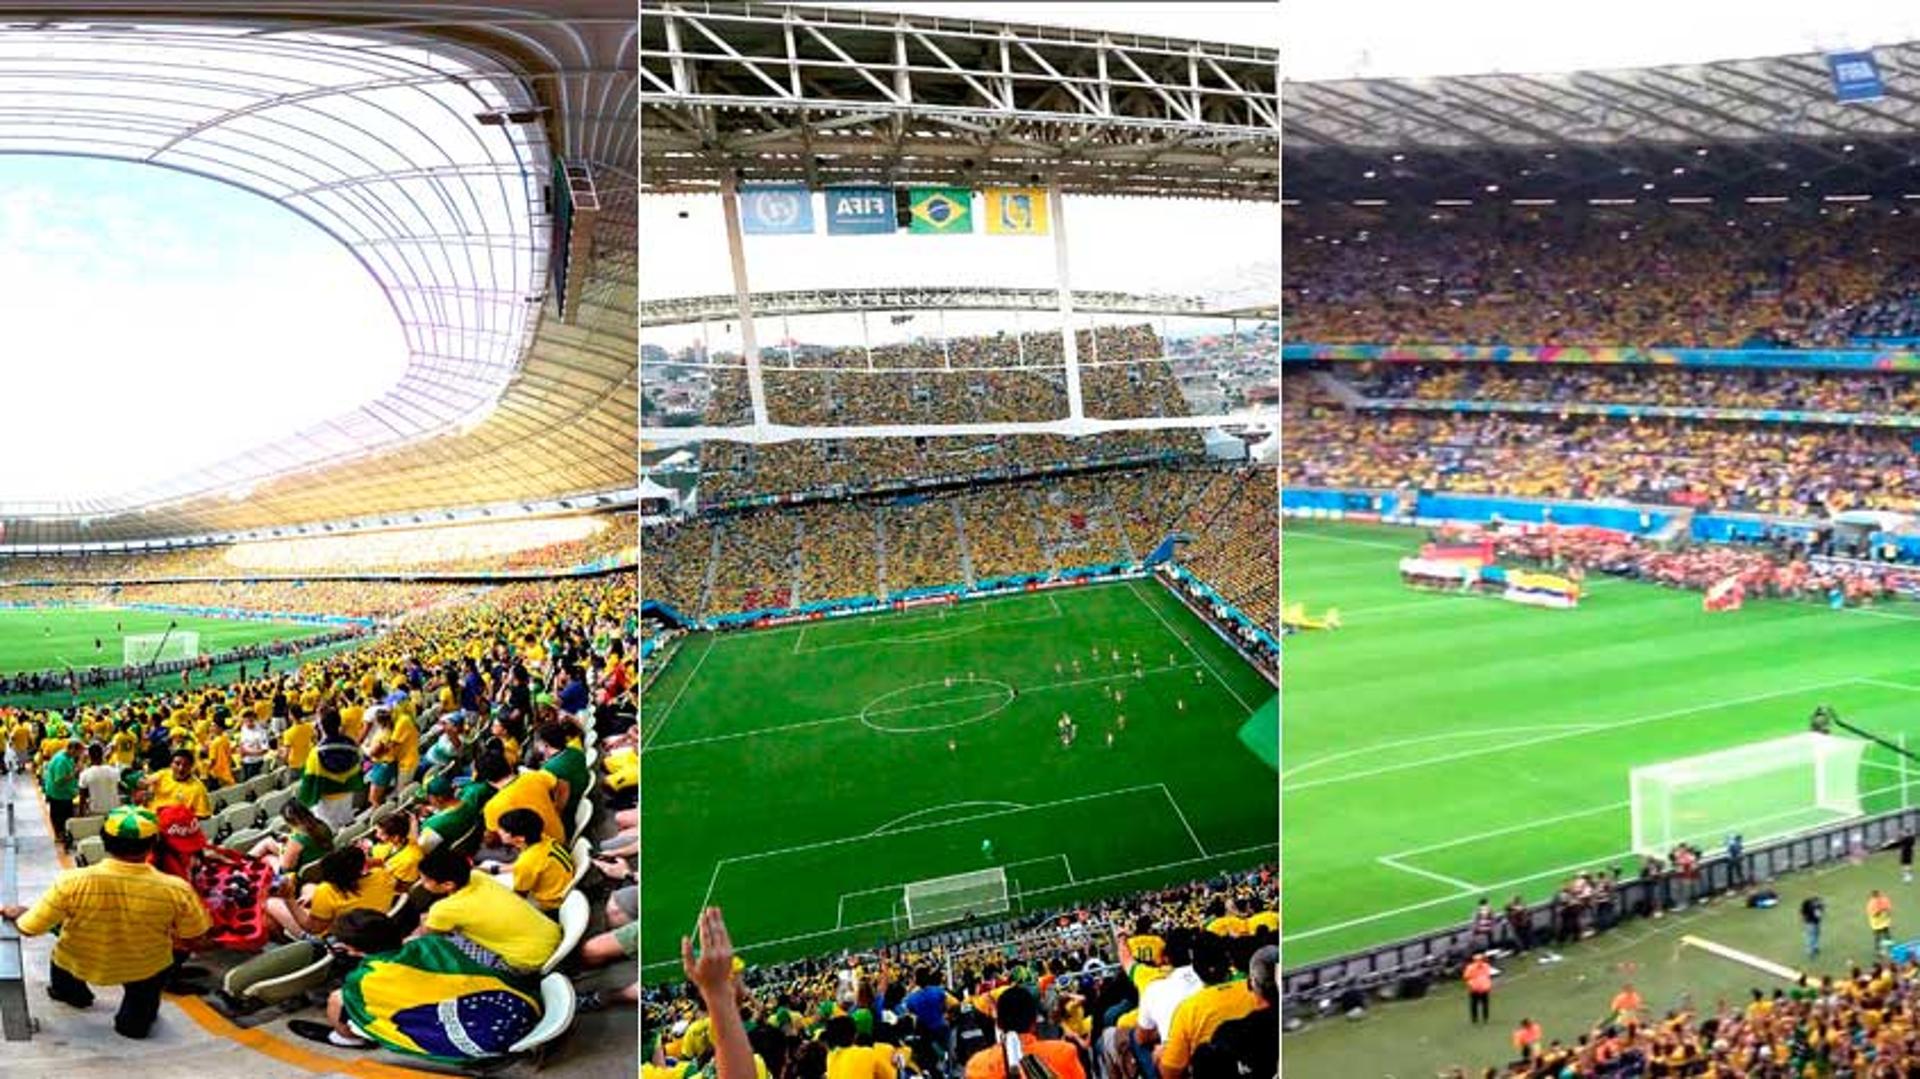 O Brasil voltará a jogar no Maracanã depois de seis anos sem atuar no estádio mais famoso do futebol brasileiro. A última partida foi diante da Espanha, na final da Copa das Confederações de 2013. O LANCE! mostra quais estádios nacionais receberam a Seleção nessas seis temporadas.